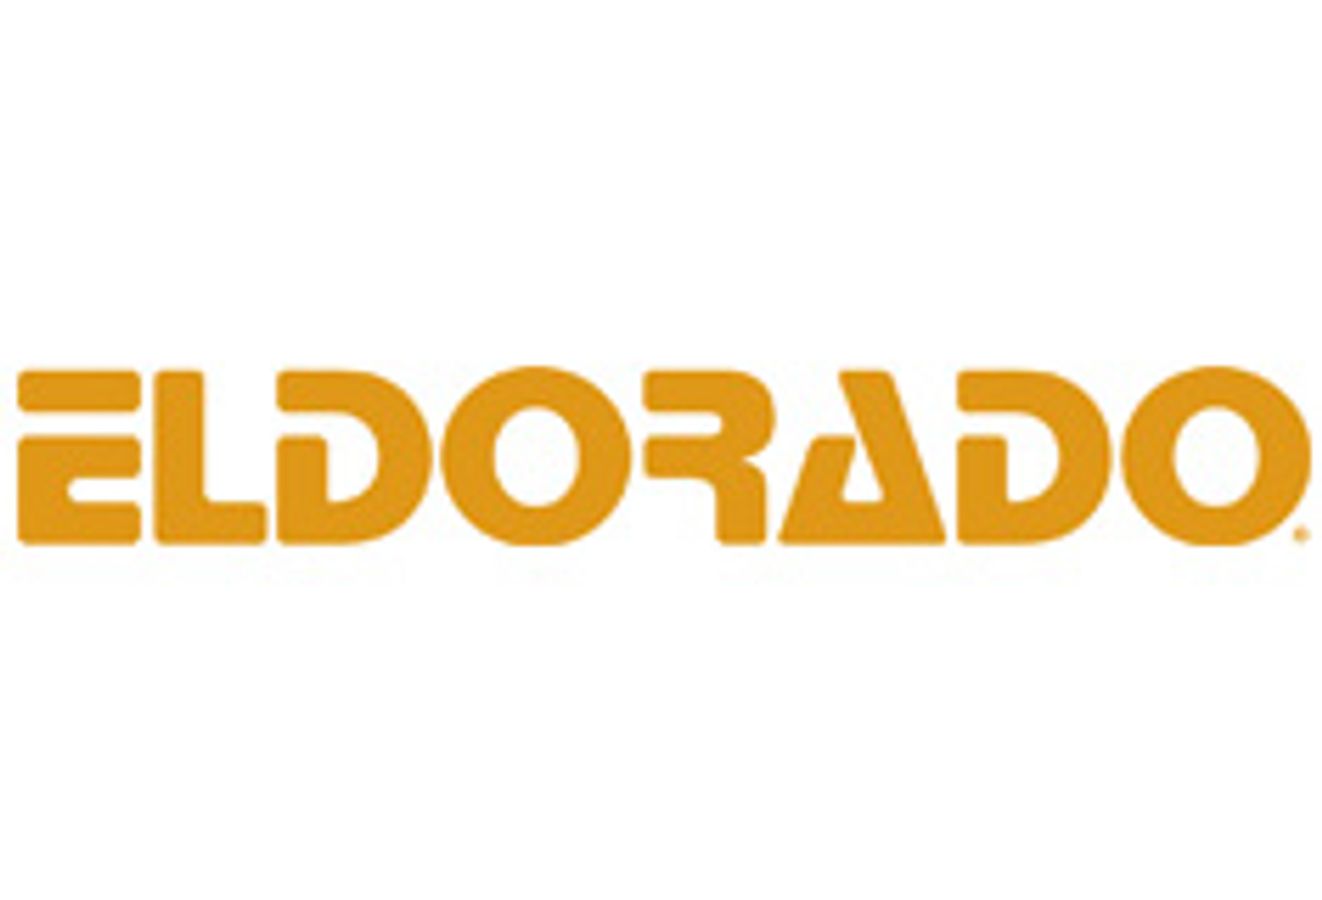 Eldorado Trading Company